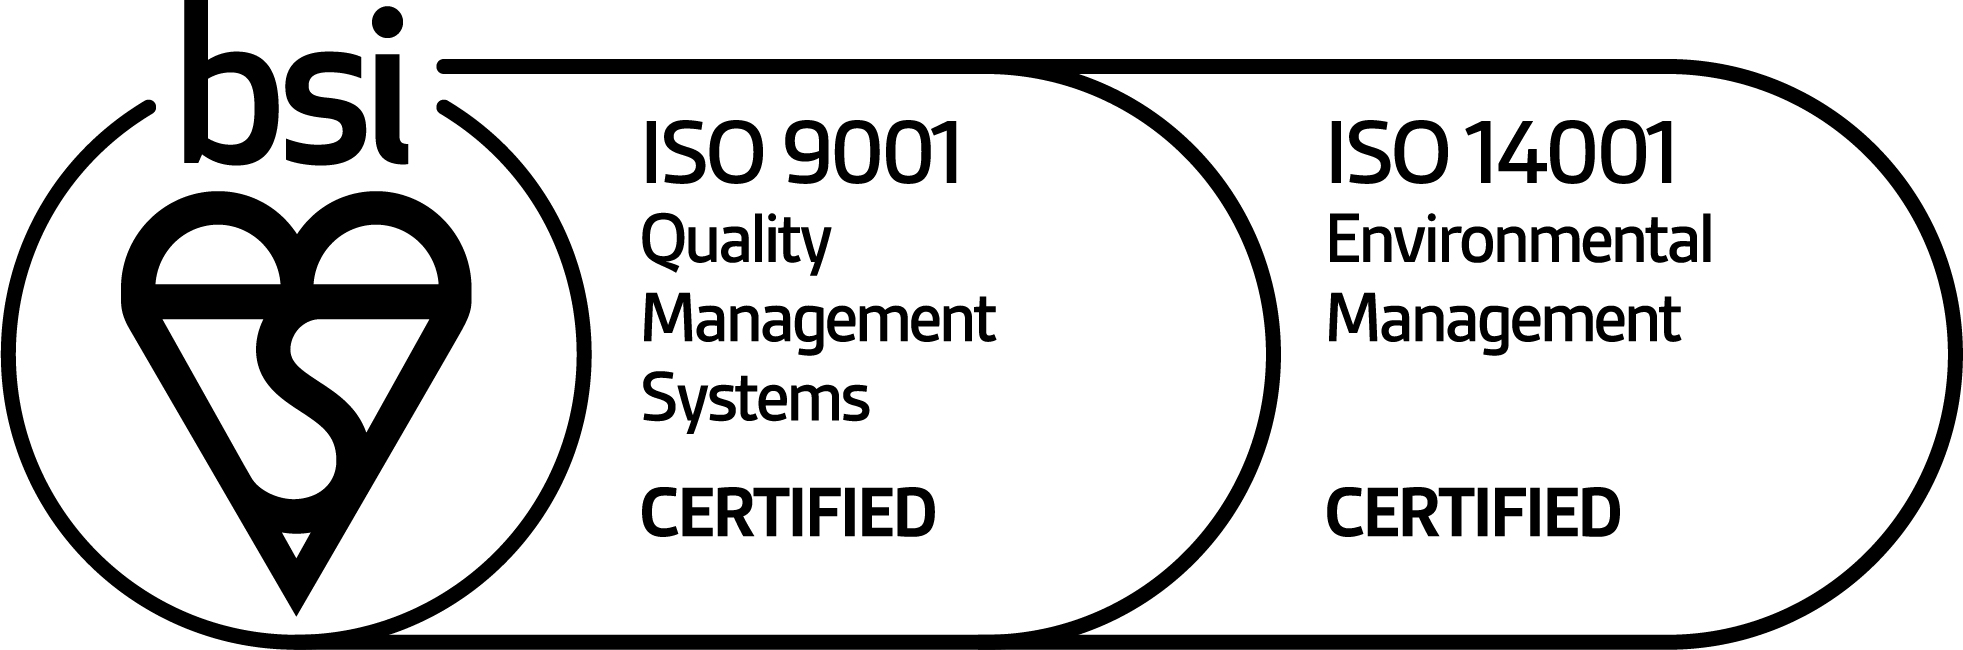 County Plumbing BIS ISO accreditation